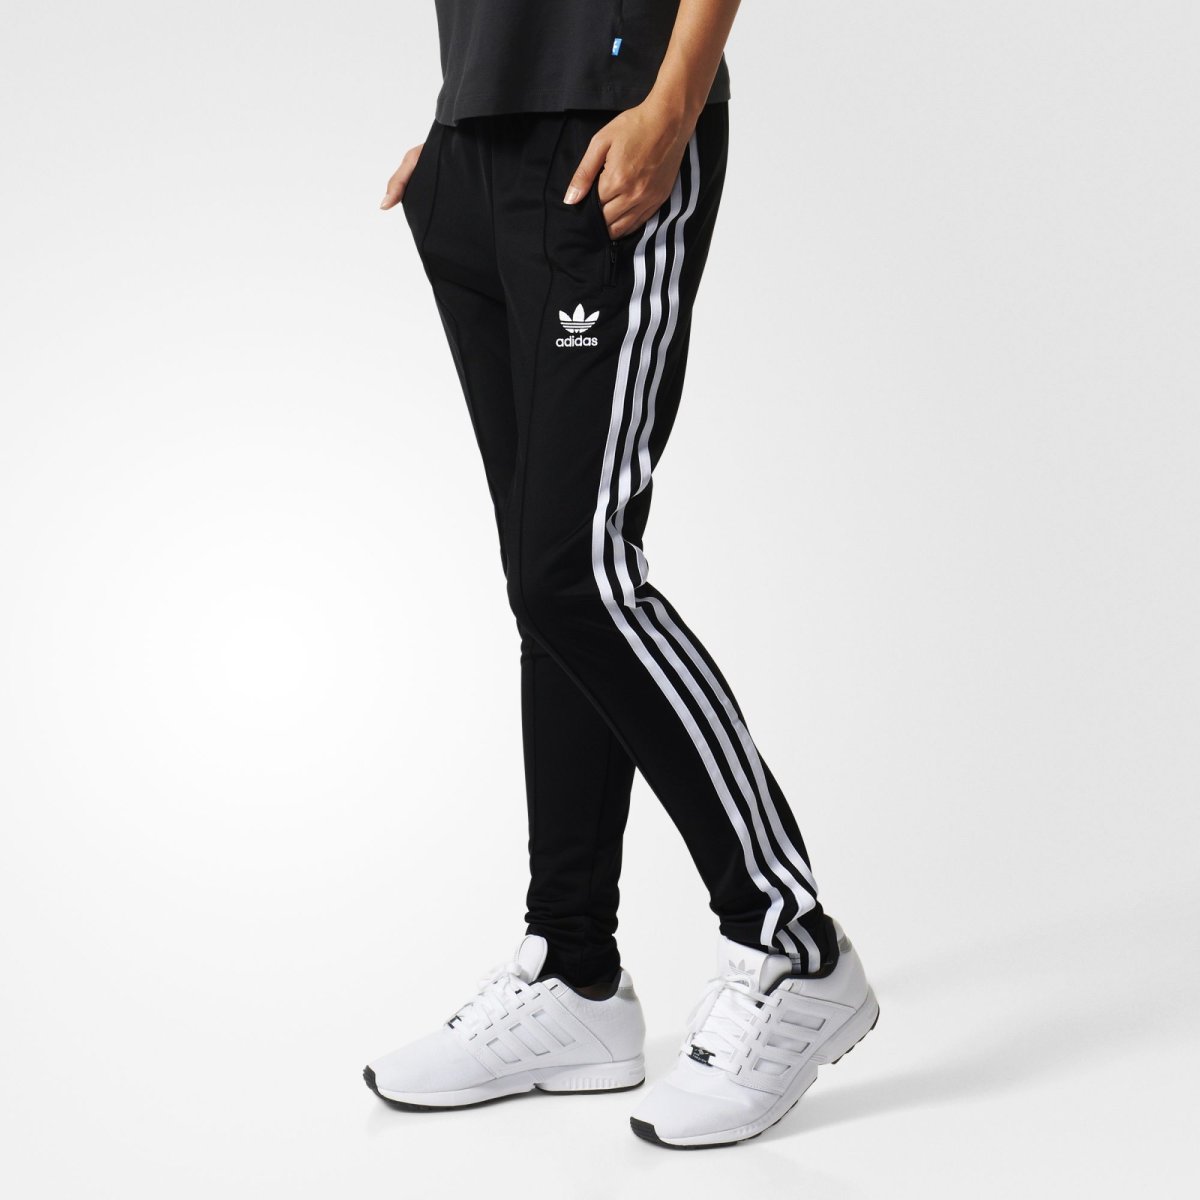 Adidas Firebird брюки